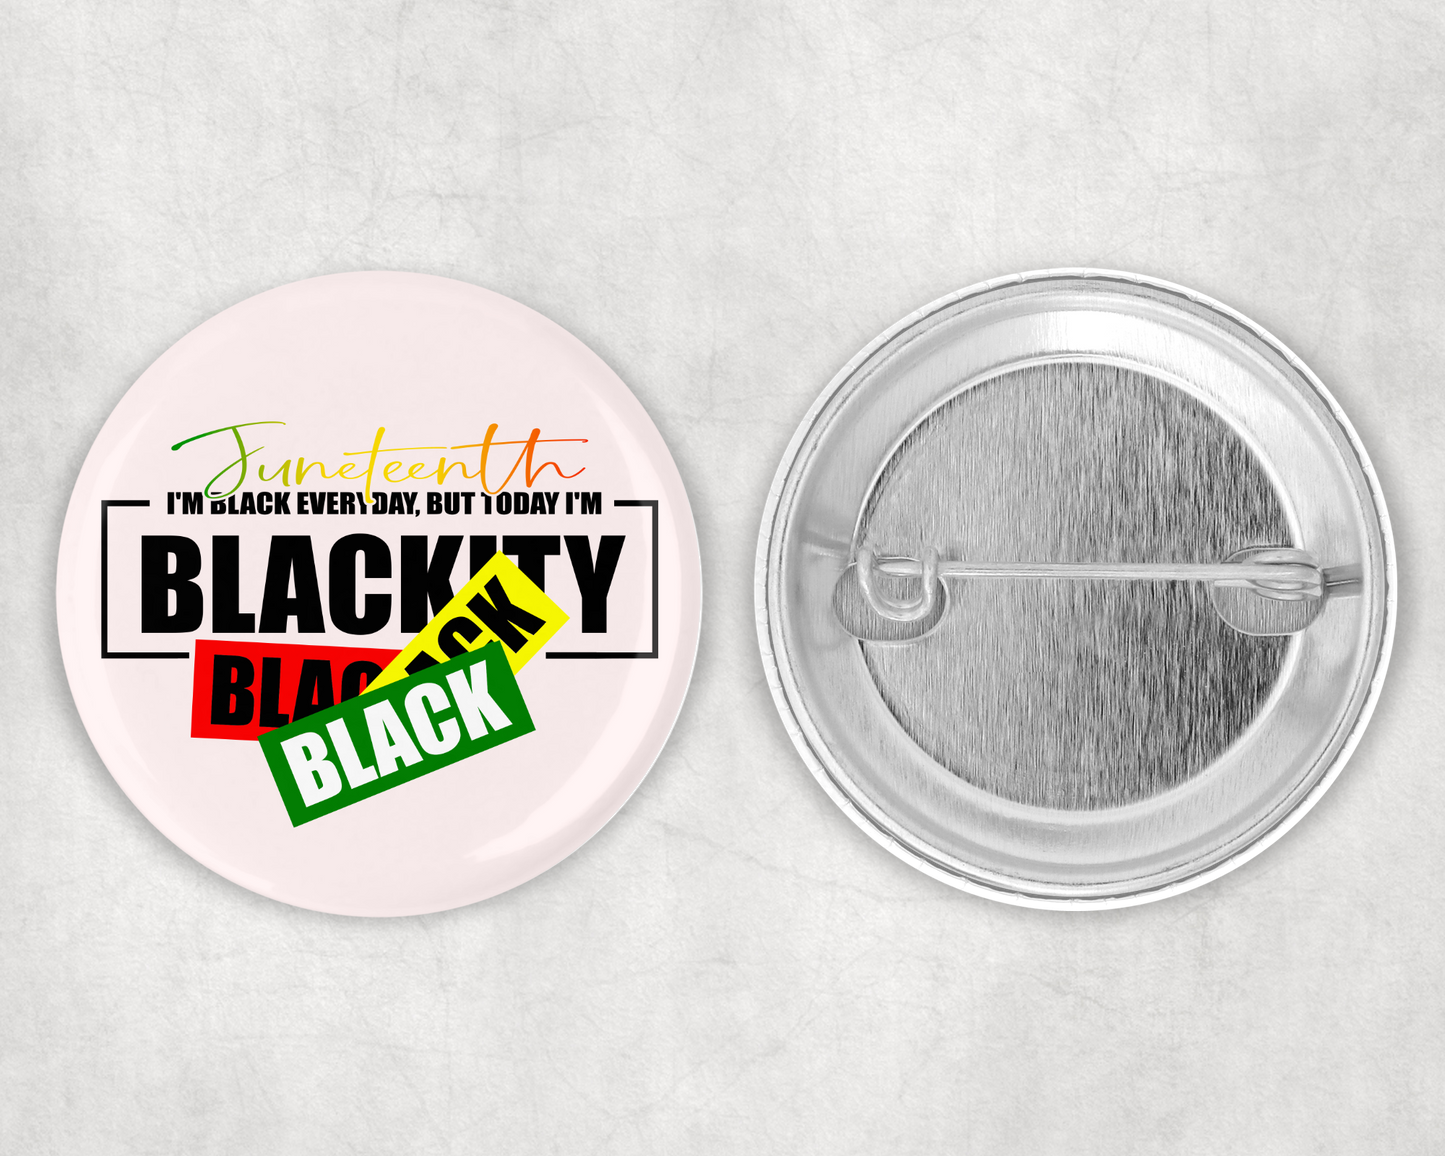 Blackity Black Black Pinback Button